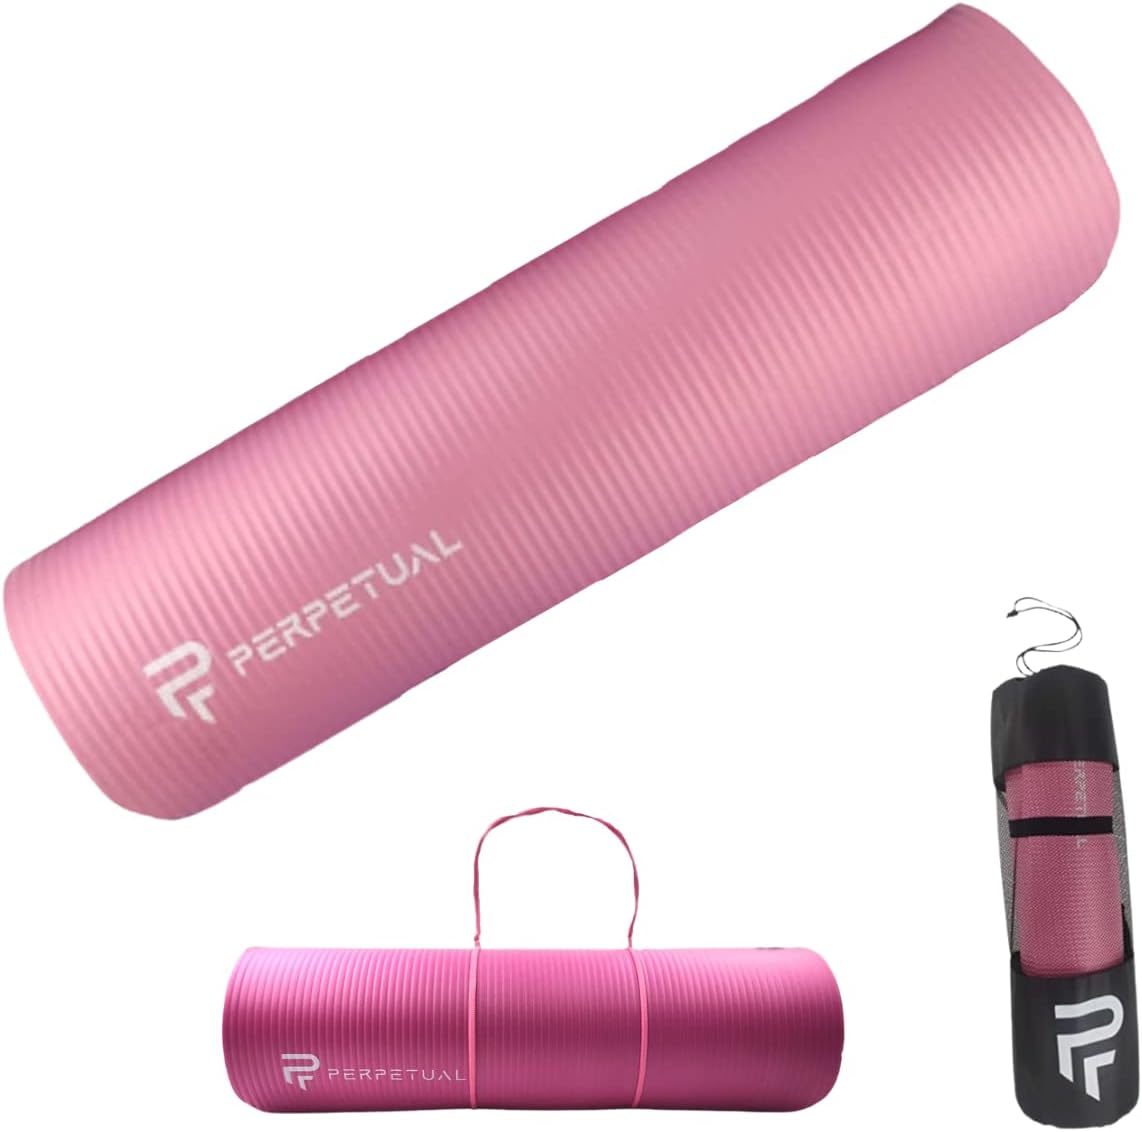 Esterilla De Yoga Y Pilates Antideslizante De 10mm Perpetual Con Correa Y Bolsa De Transporte - rosa - 